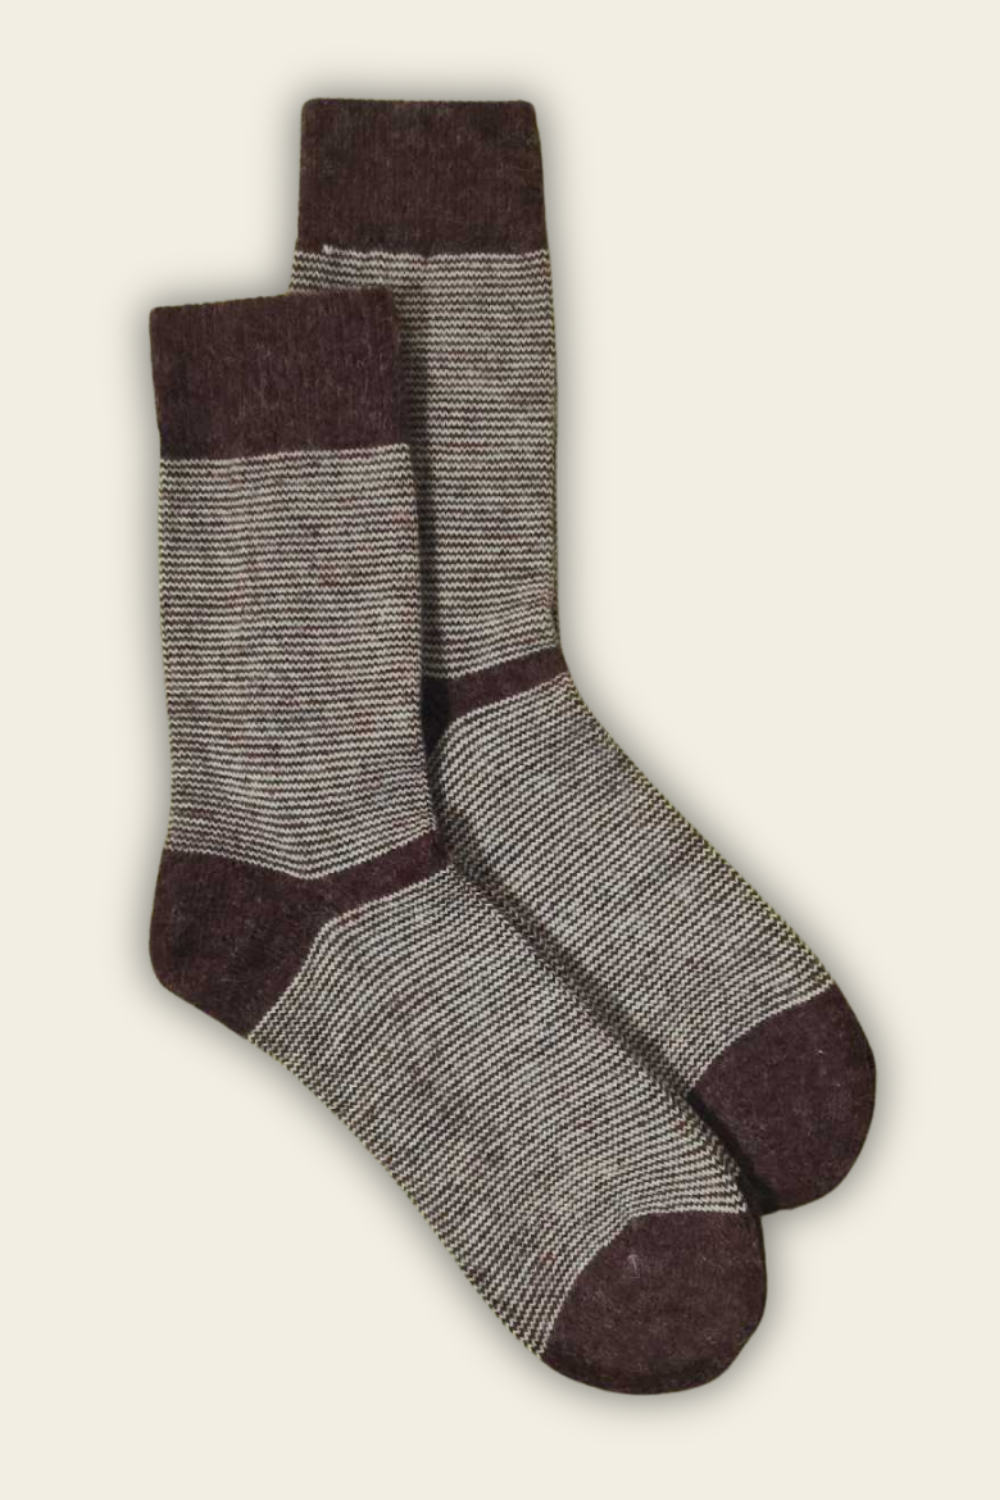 Socks with Alpaca and Merino Wool - dark red - 2 pairs